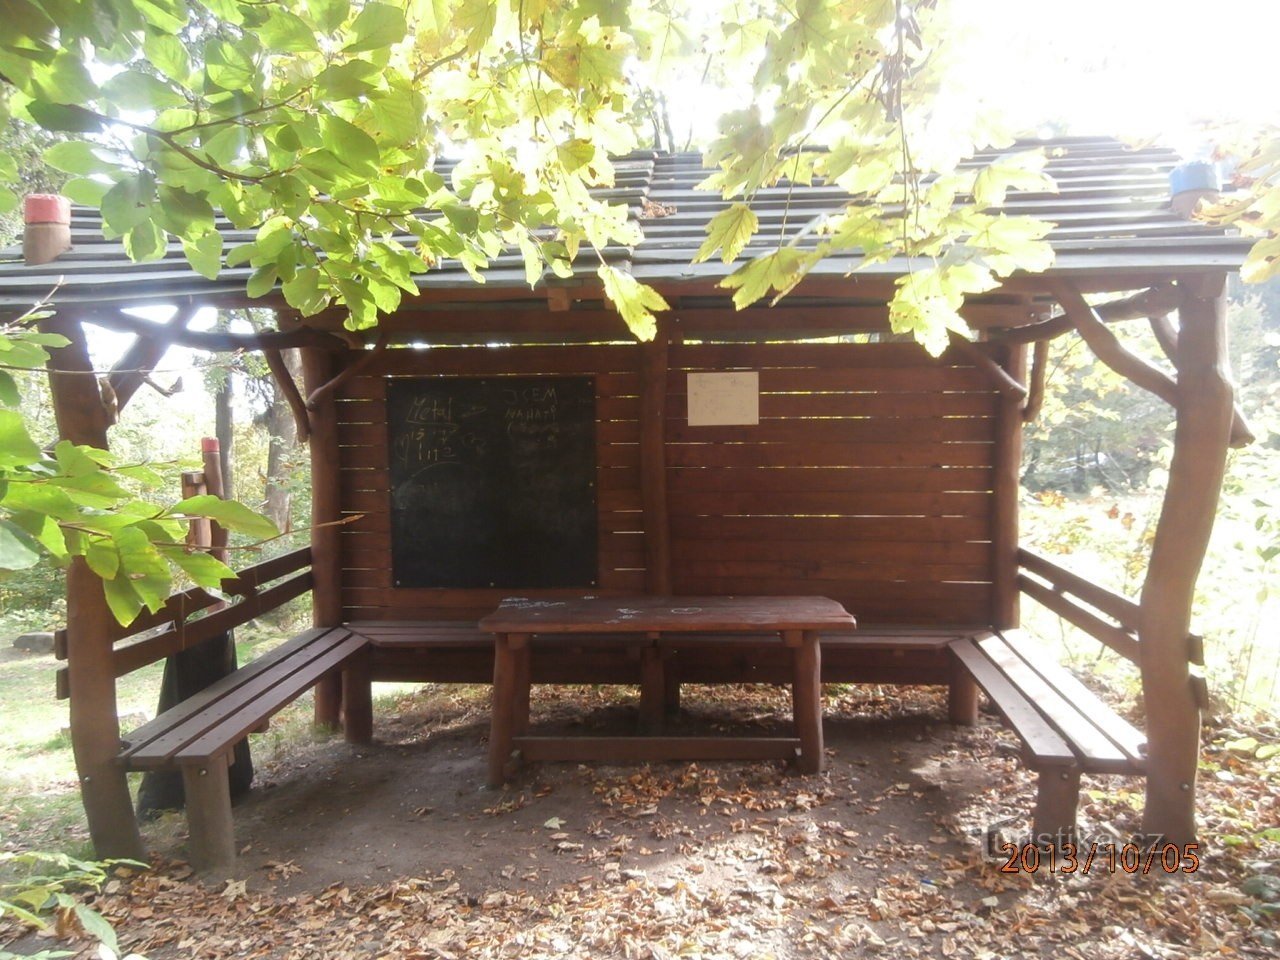 Lugar de descanso cerca de Terezínka